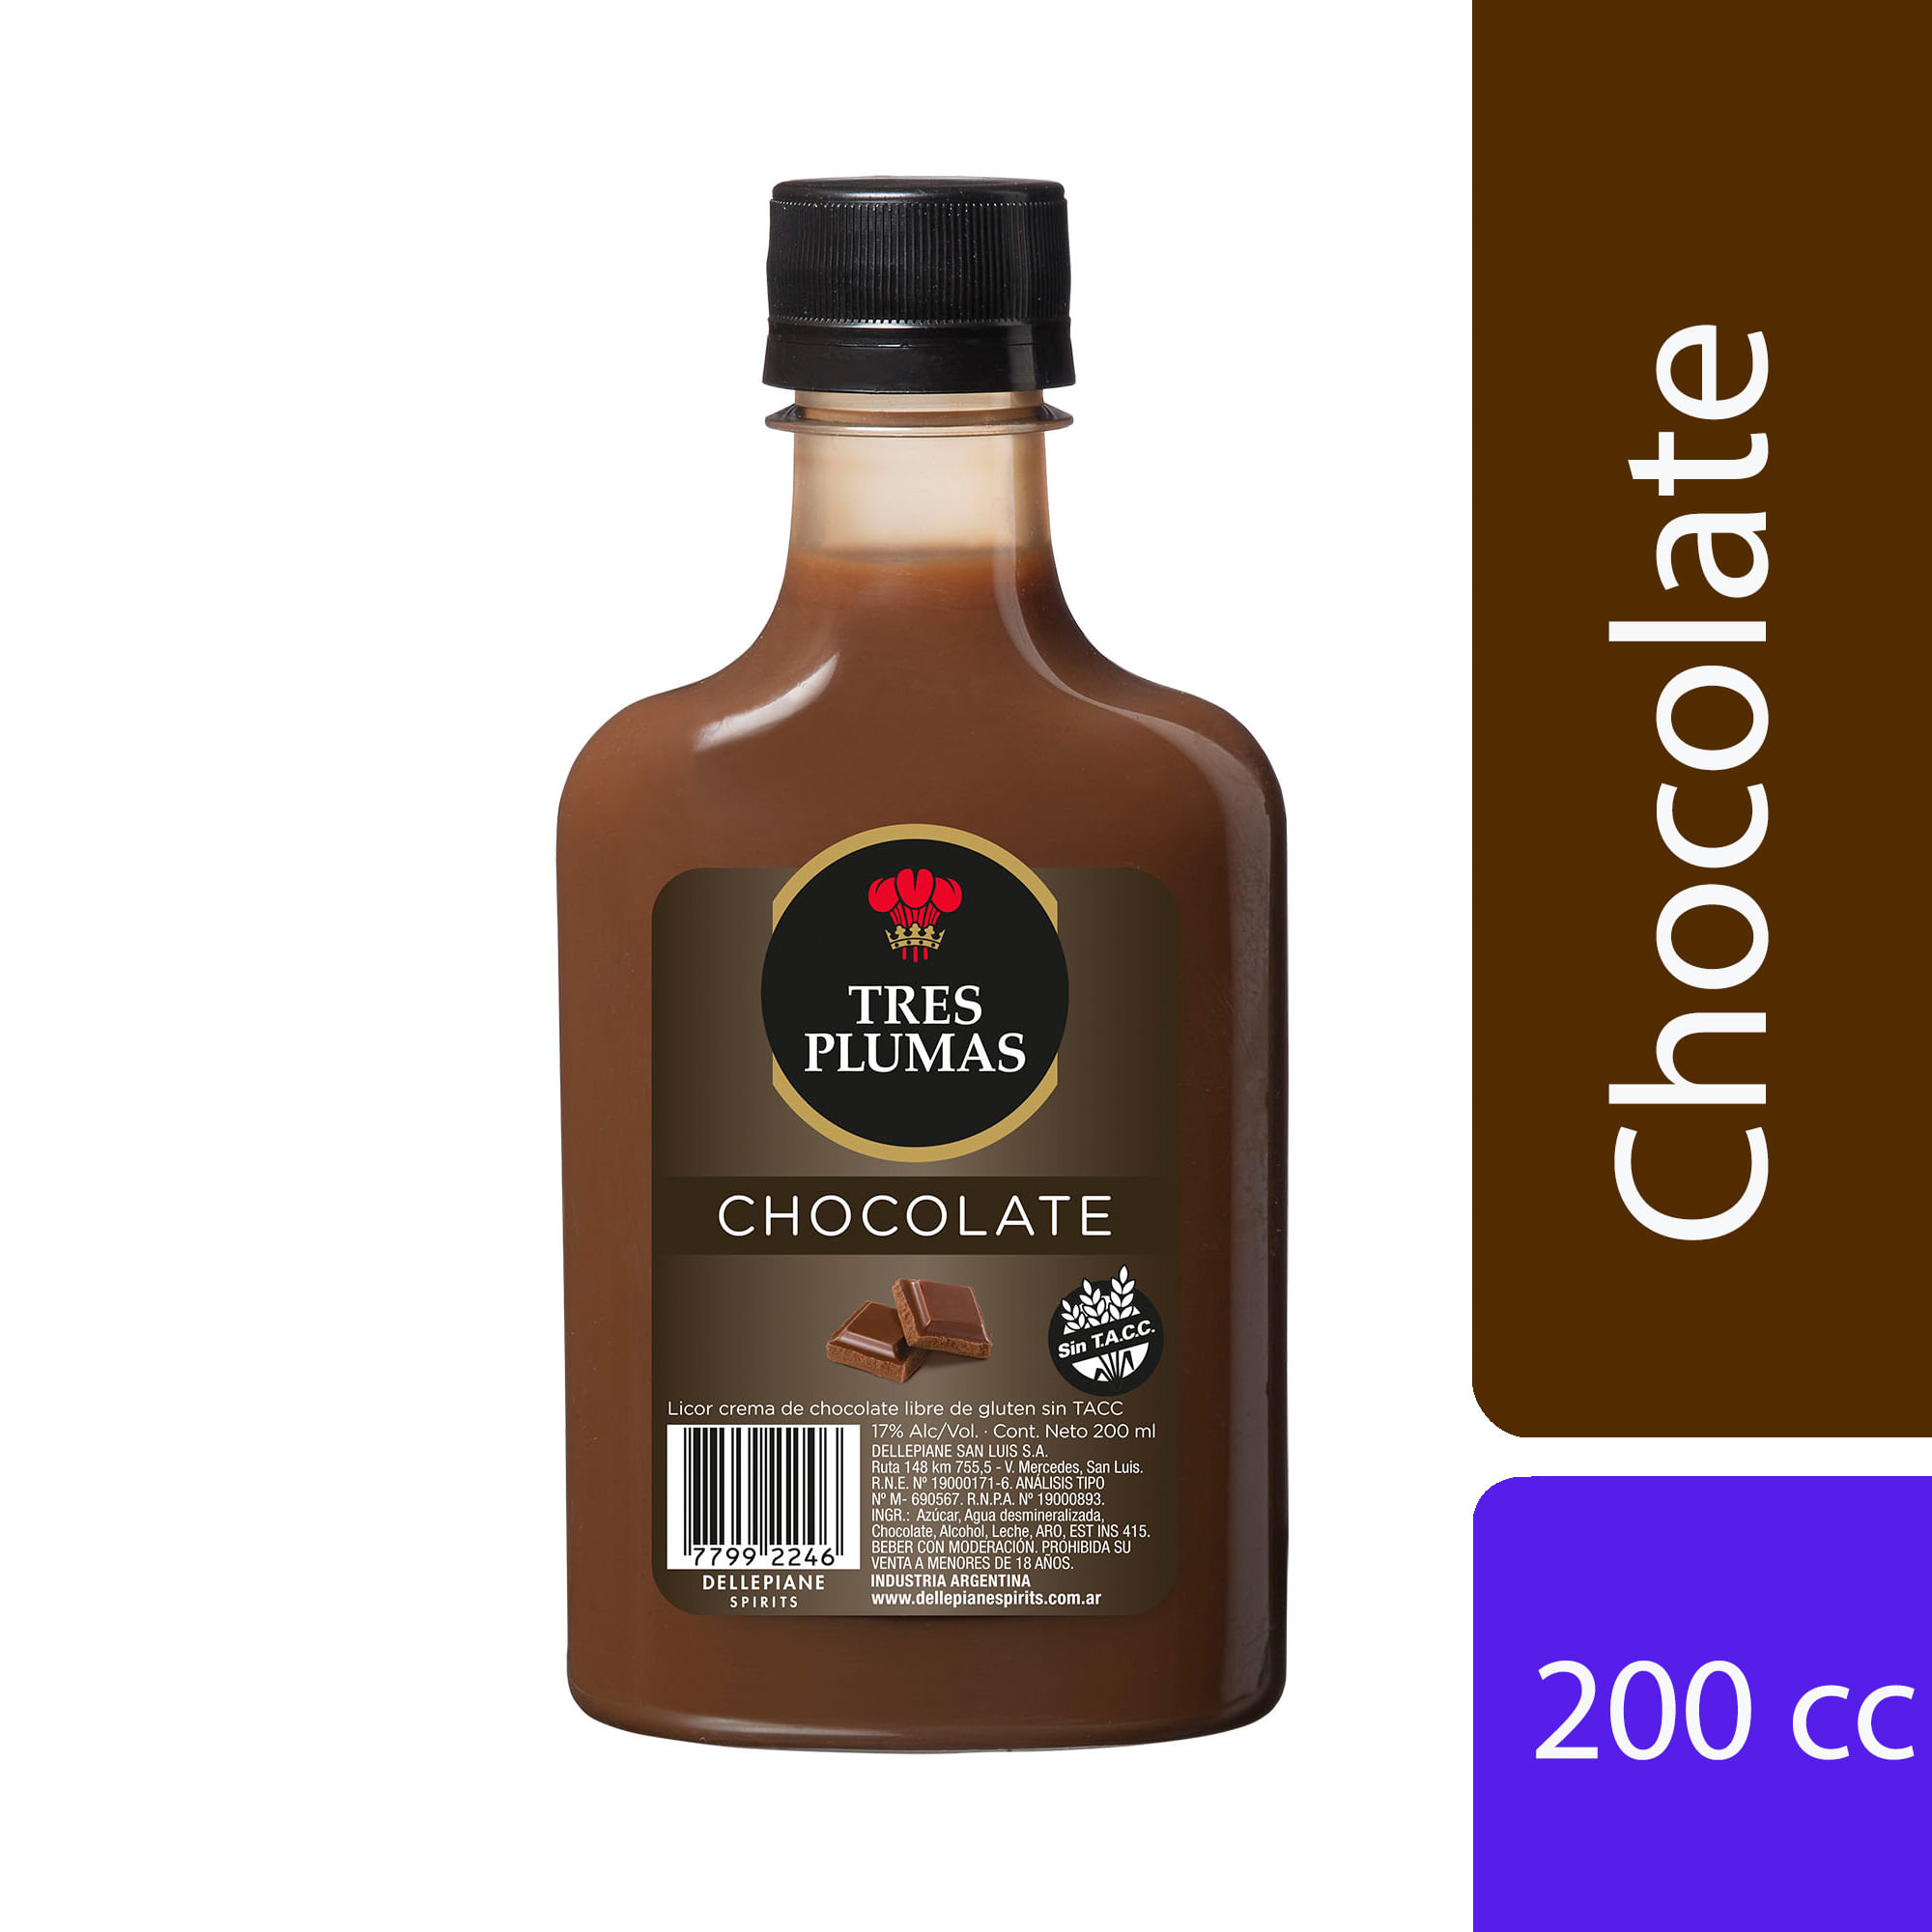 Licor de chocolate Tres Plumas petaca 200 cc. - Carrefour